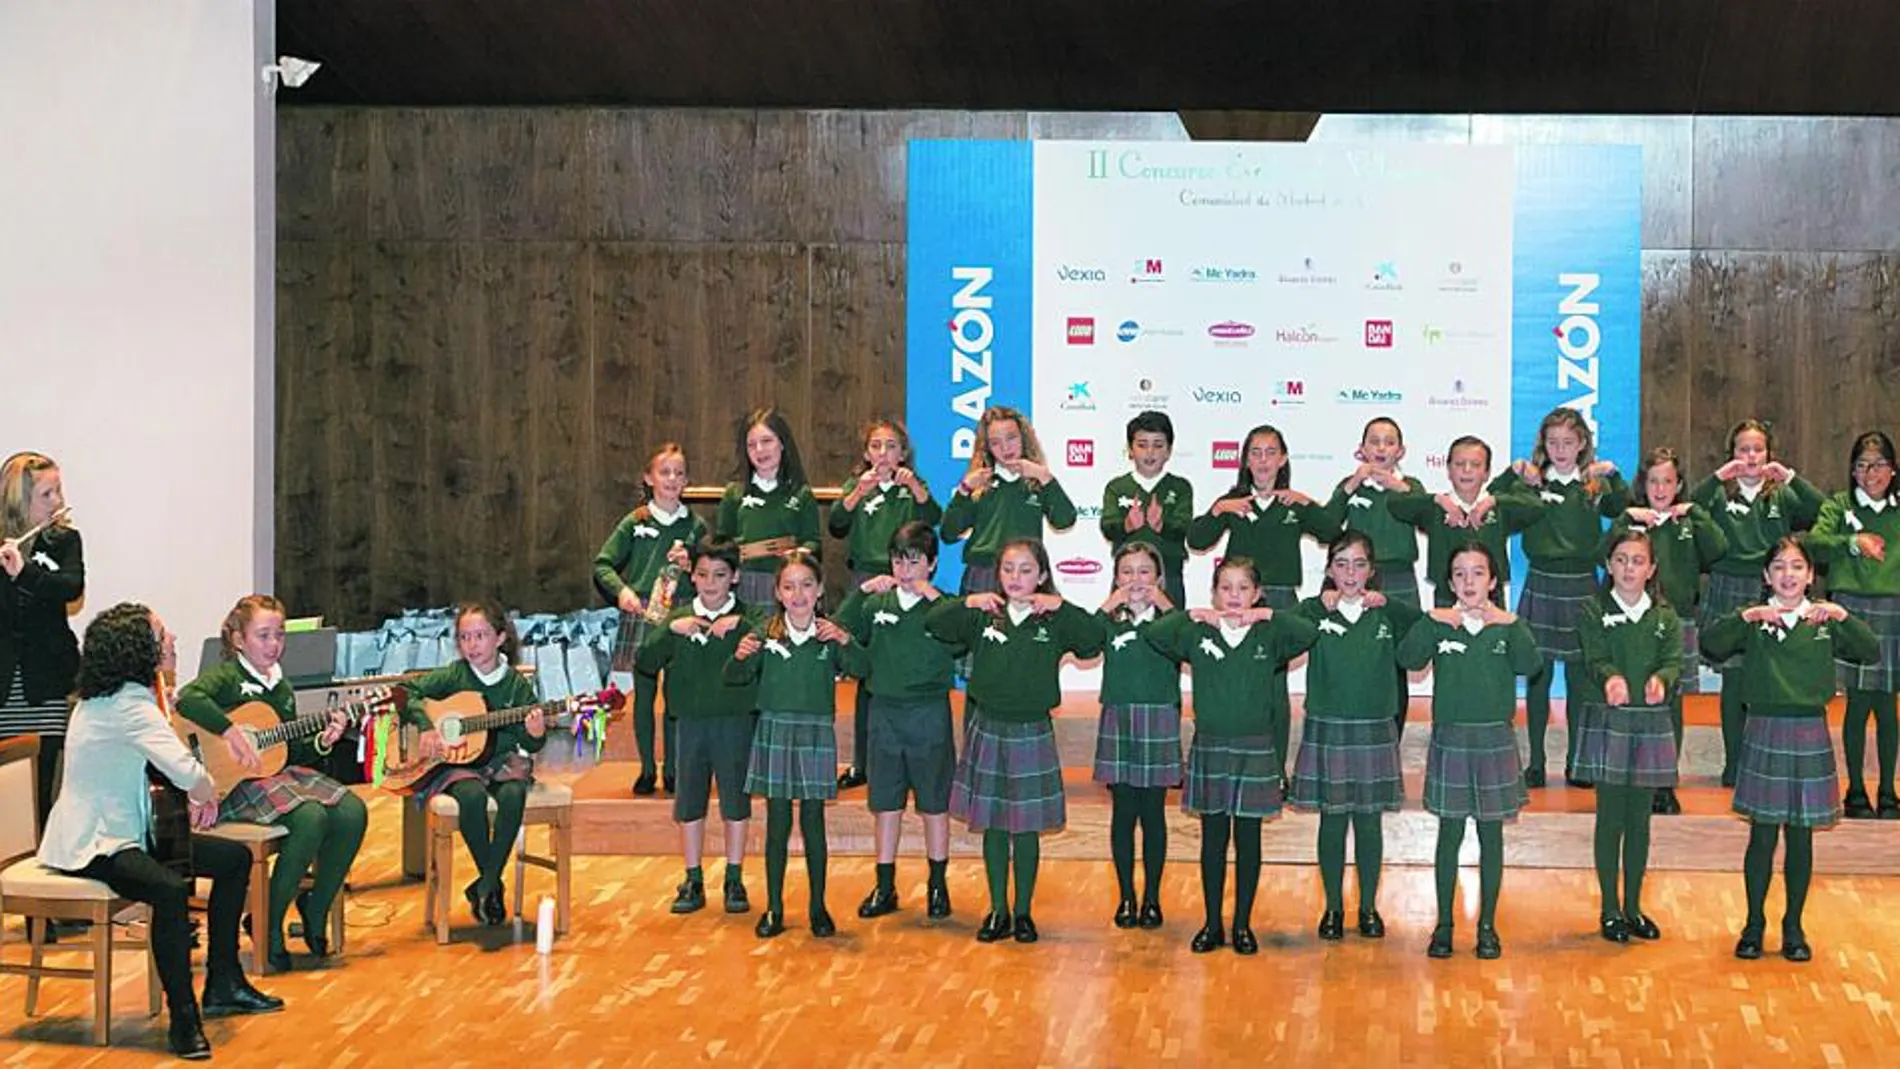 El Colegio María Virgen ganó el II Concurso de Villancicos